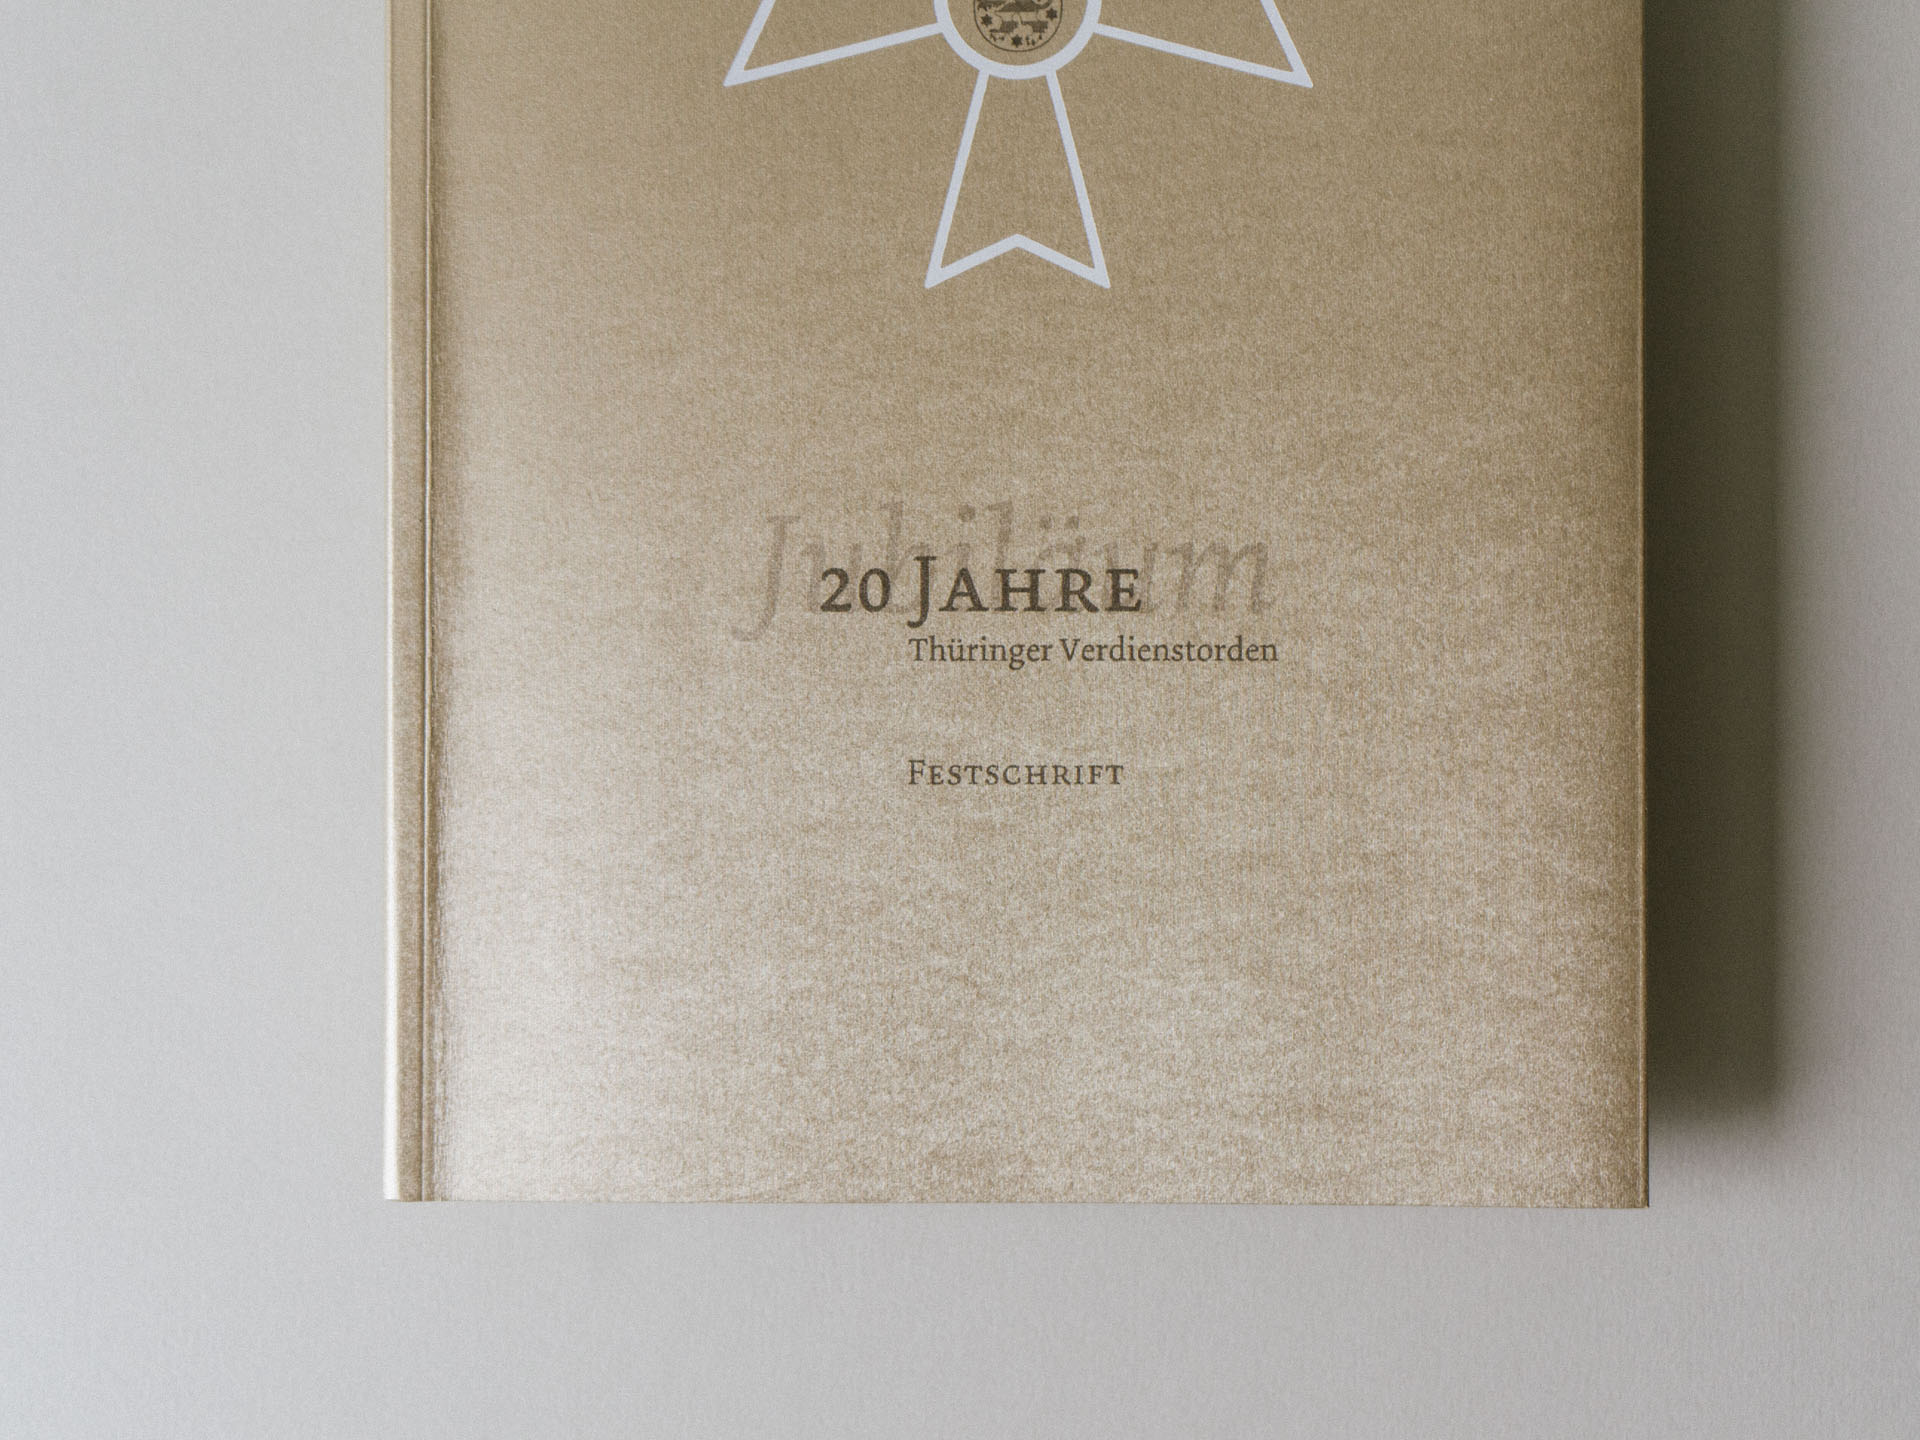 Thüringer Staatskanzlei, Festschrift, Umschlag, Gmund Gold Essence